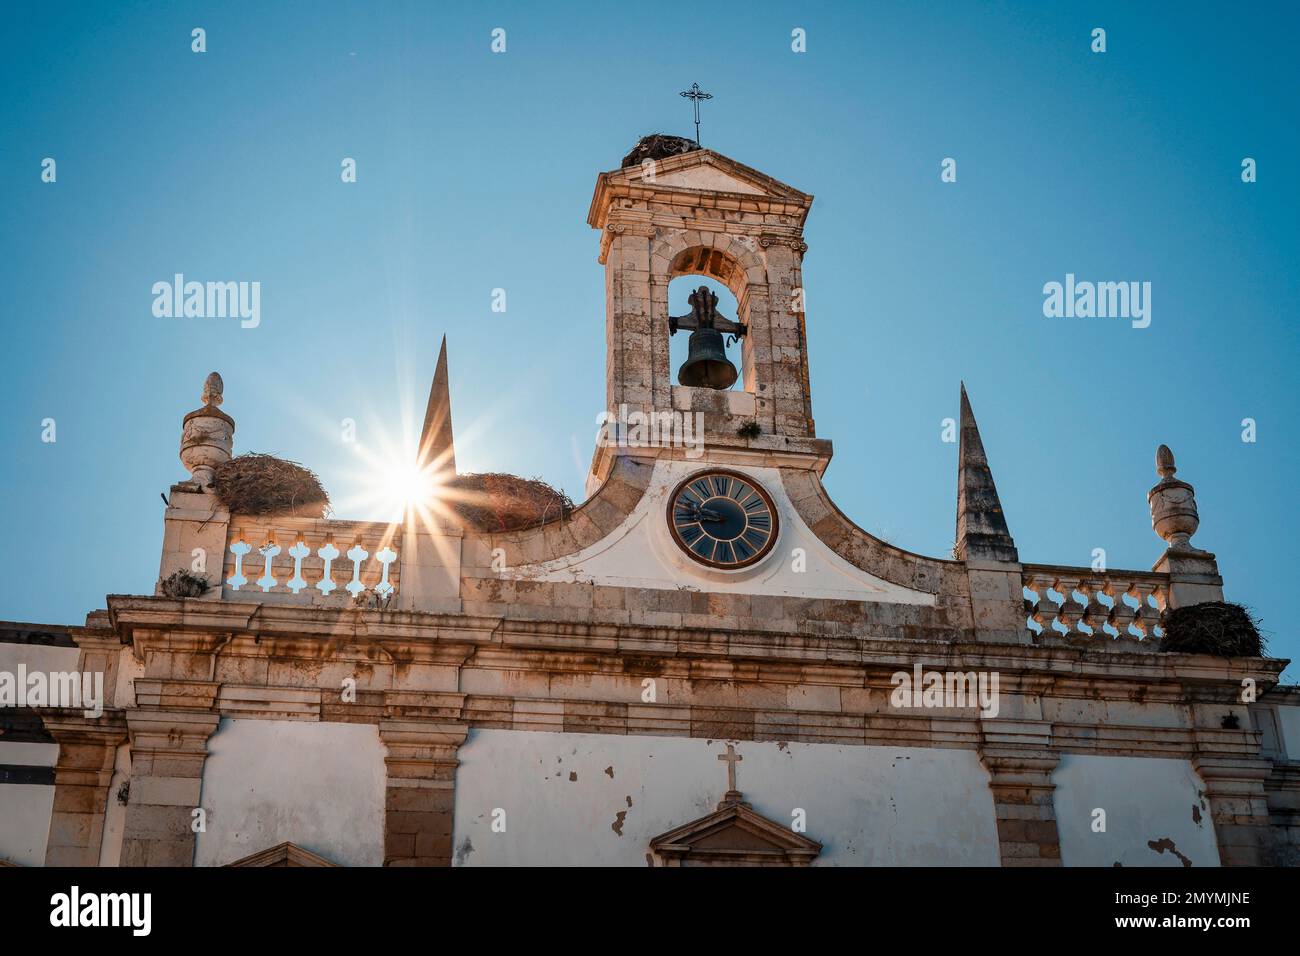 Entrée historique du centre-ville et de la vieille ville connue sous le nom d'Arco da vila, Faro, Algarve, Portugal, Europe Banque D'Images